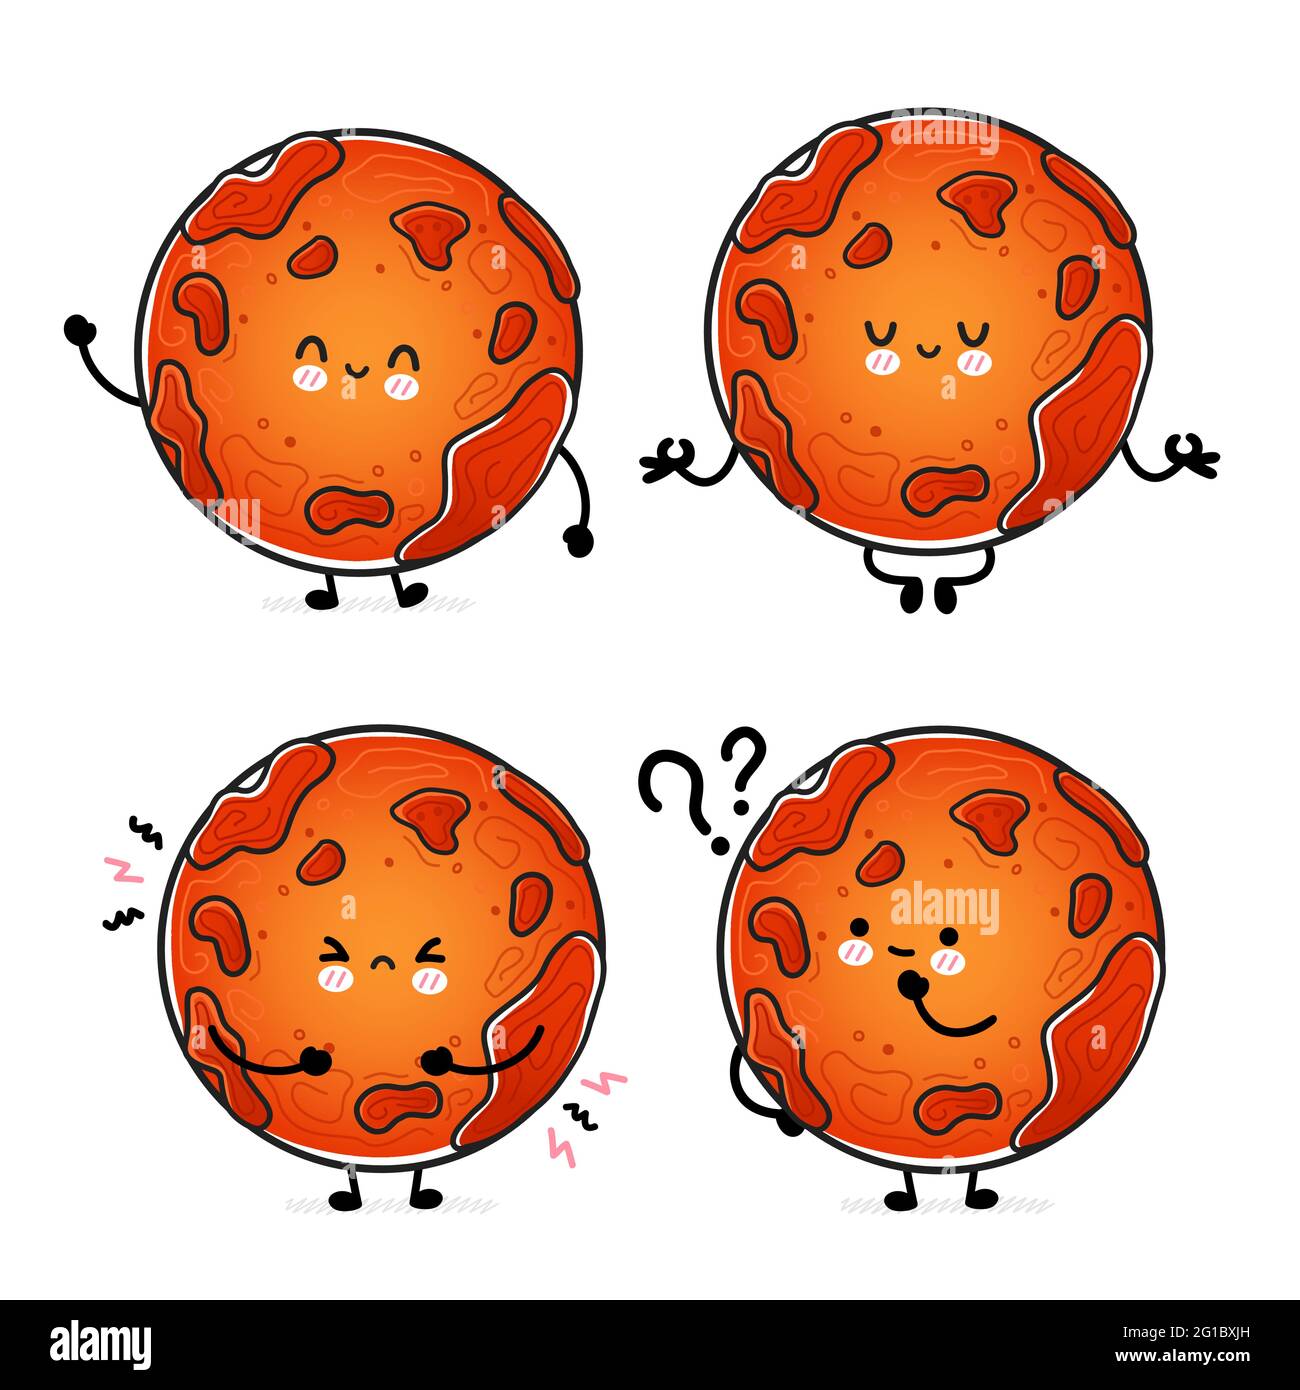 Niedliche lustige glücklich Mars Planet Set-Sammlung. Vektor Hand gezeichnet Cartoon kawaii Charakter Illustration Symbol. Isoliert auf weißem Hintergrund. Raum, Mars Planet Kosmos Charakter Konzept Stock Vektor